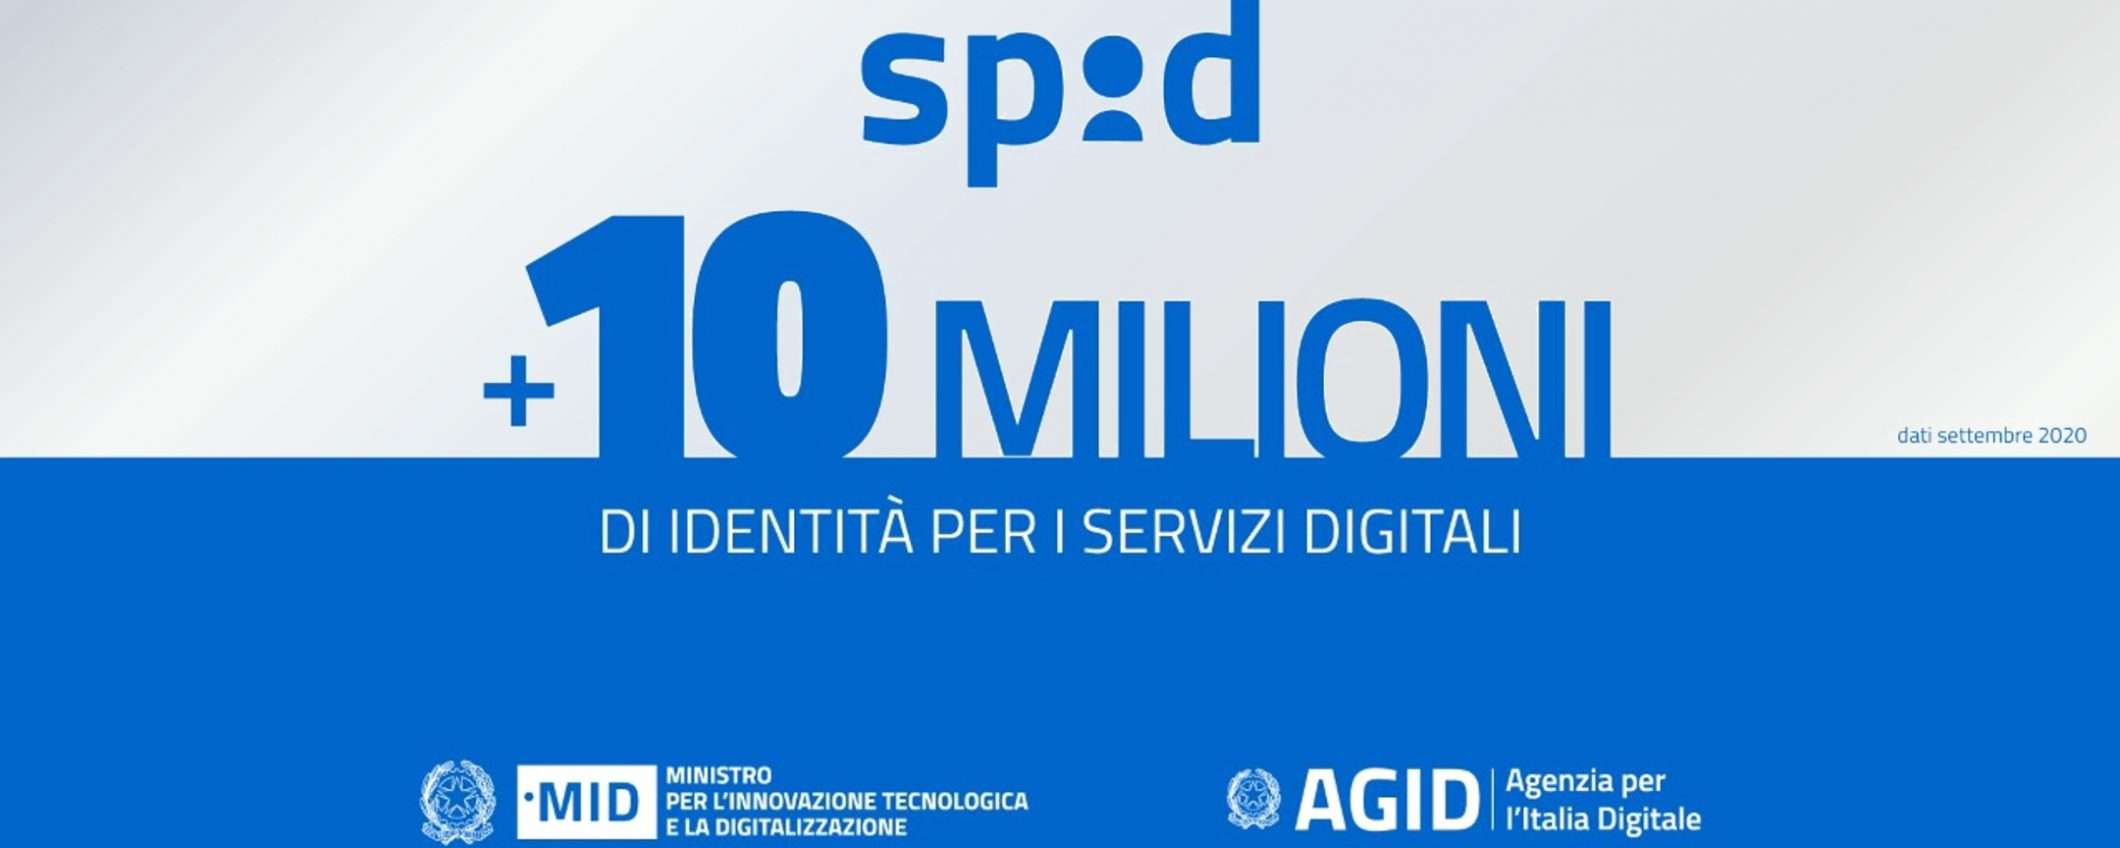 10 milioni di SPID: verso l'identità digitale e oltre